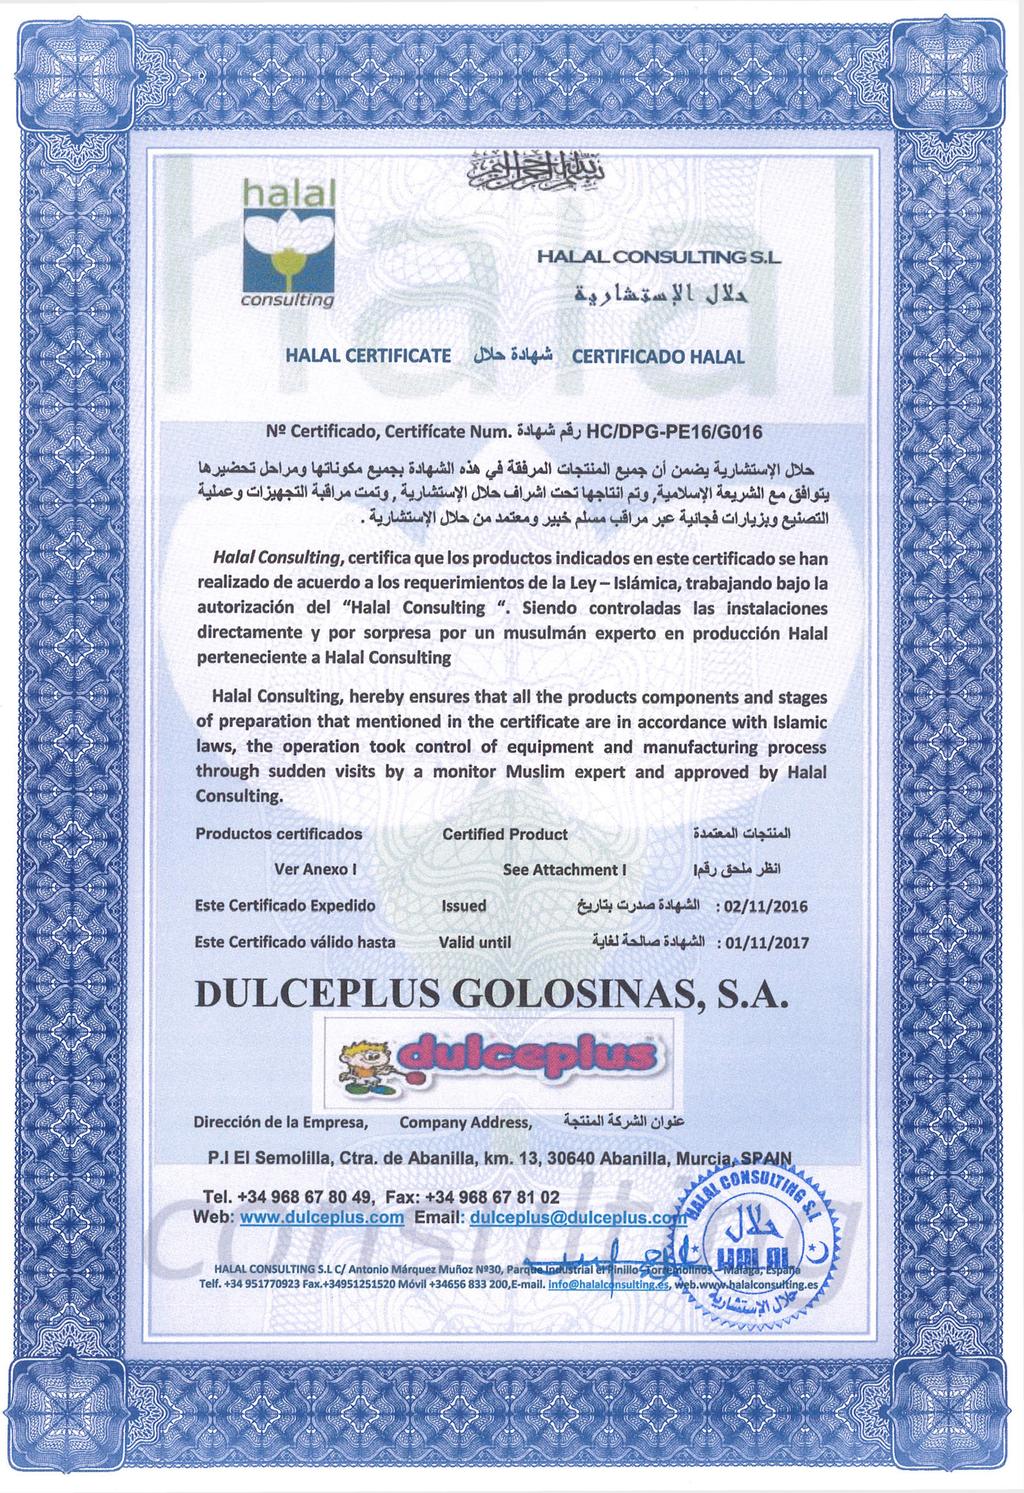 and approved by Halal. Productos certificados Certified Product Ver Anexo I Este Certificado Expedido CilauLLaJl See Attachment i Issued Ifâj JaJU jüjl ujuu dijjbua S4I4JJI 02/ 11/2016 <ülx!